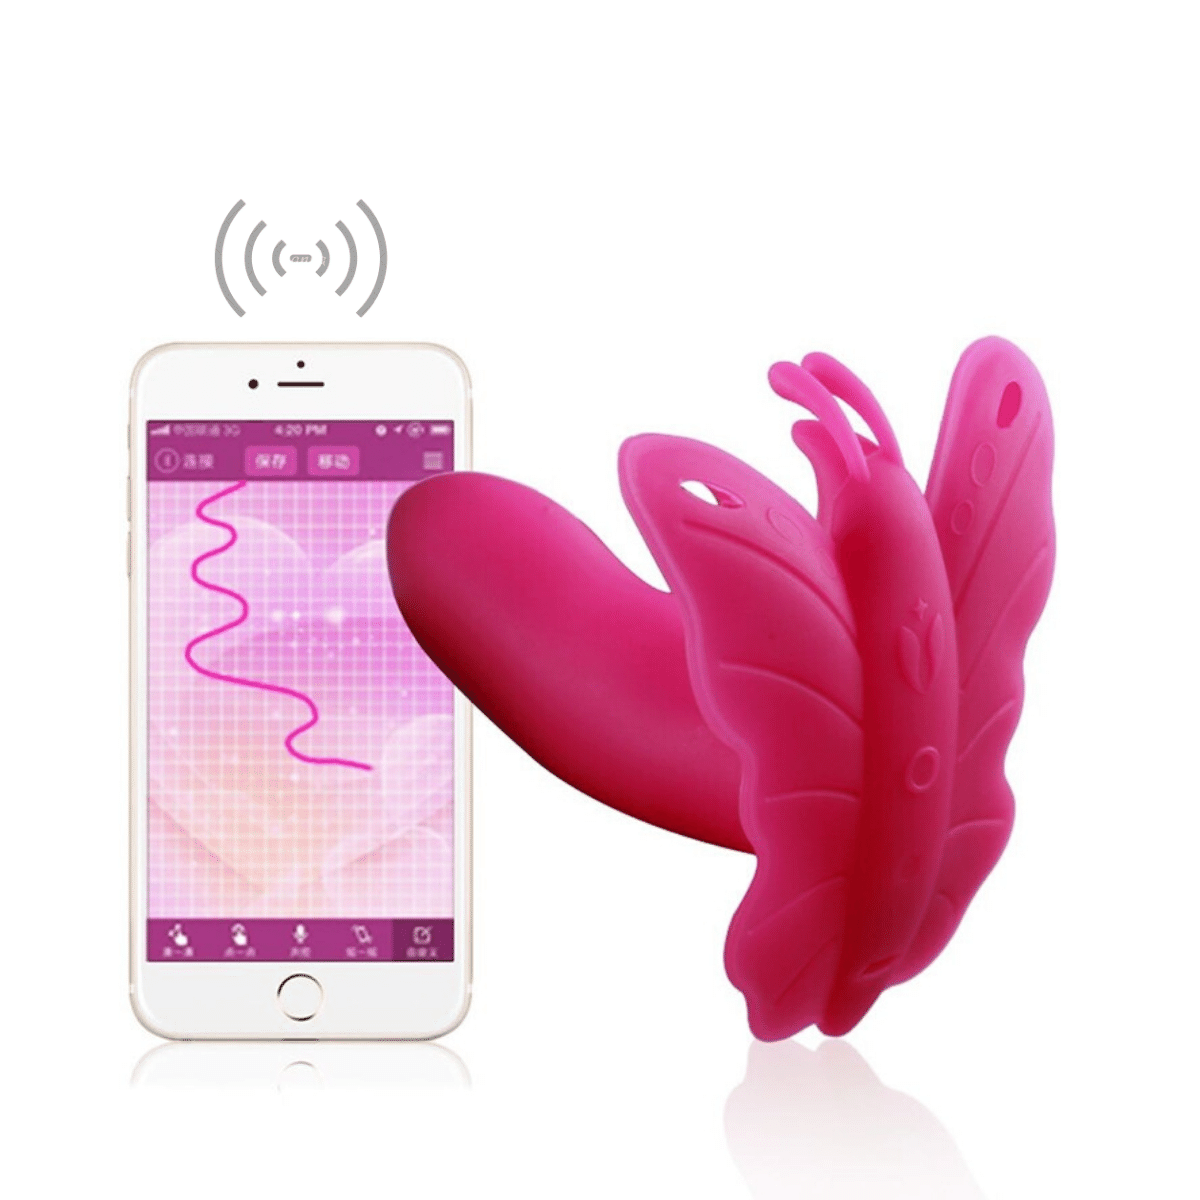 sextoys controlé à distance fantasme insolite discret sextoy couple adulte érotique jouet jeu sexe connecté smartphone IOS android  (5)